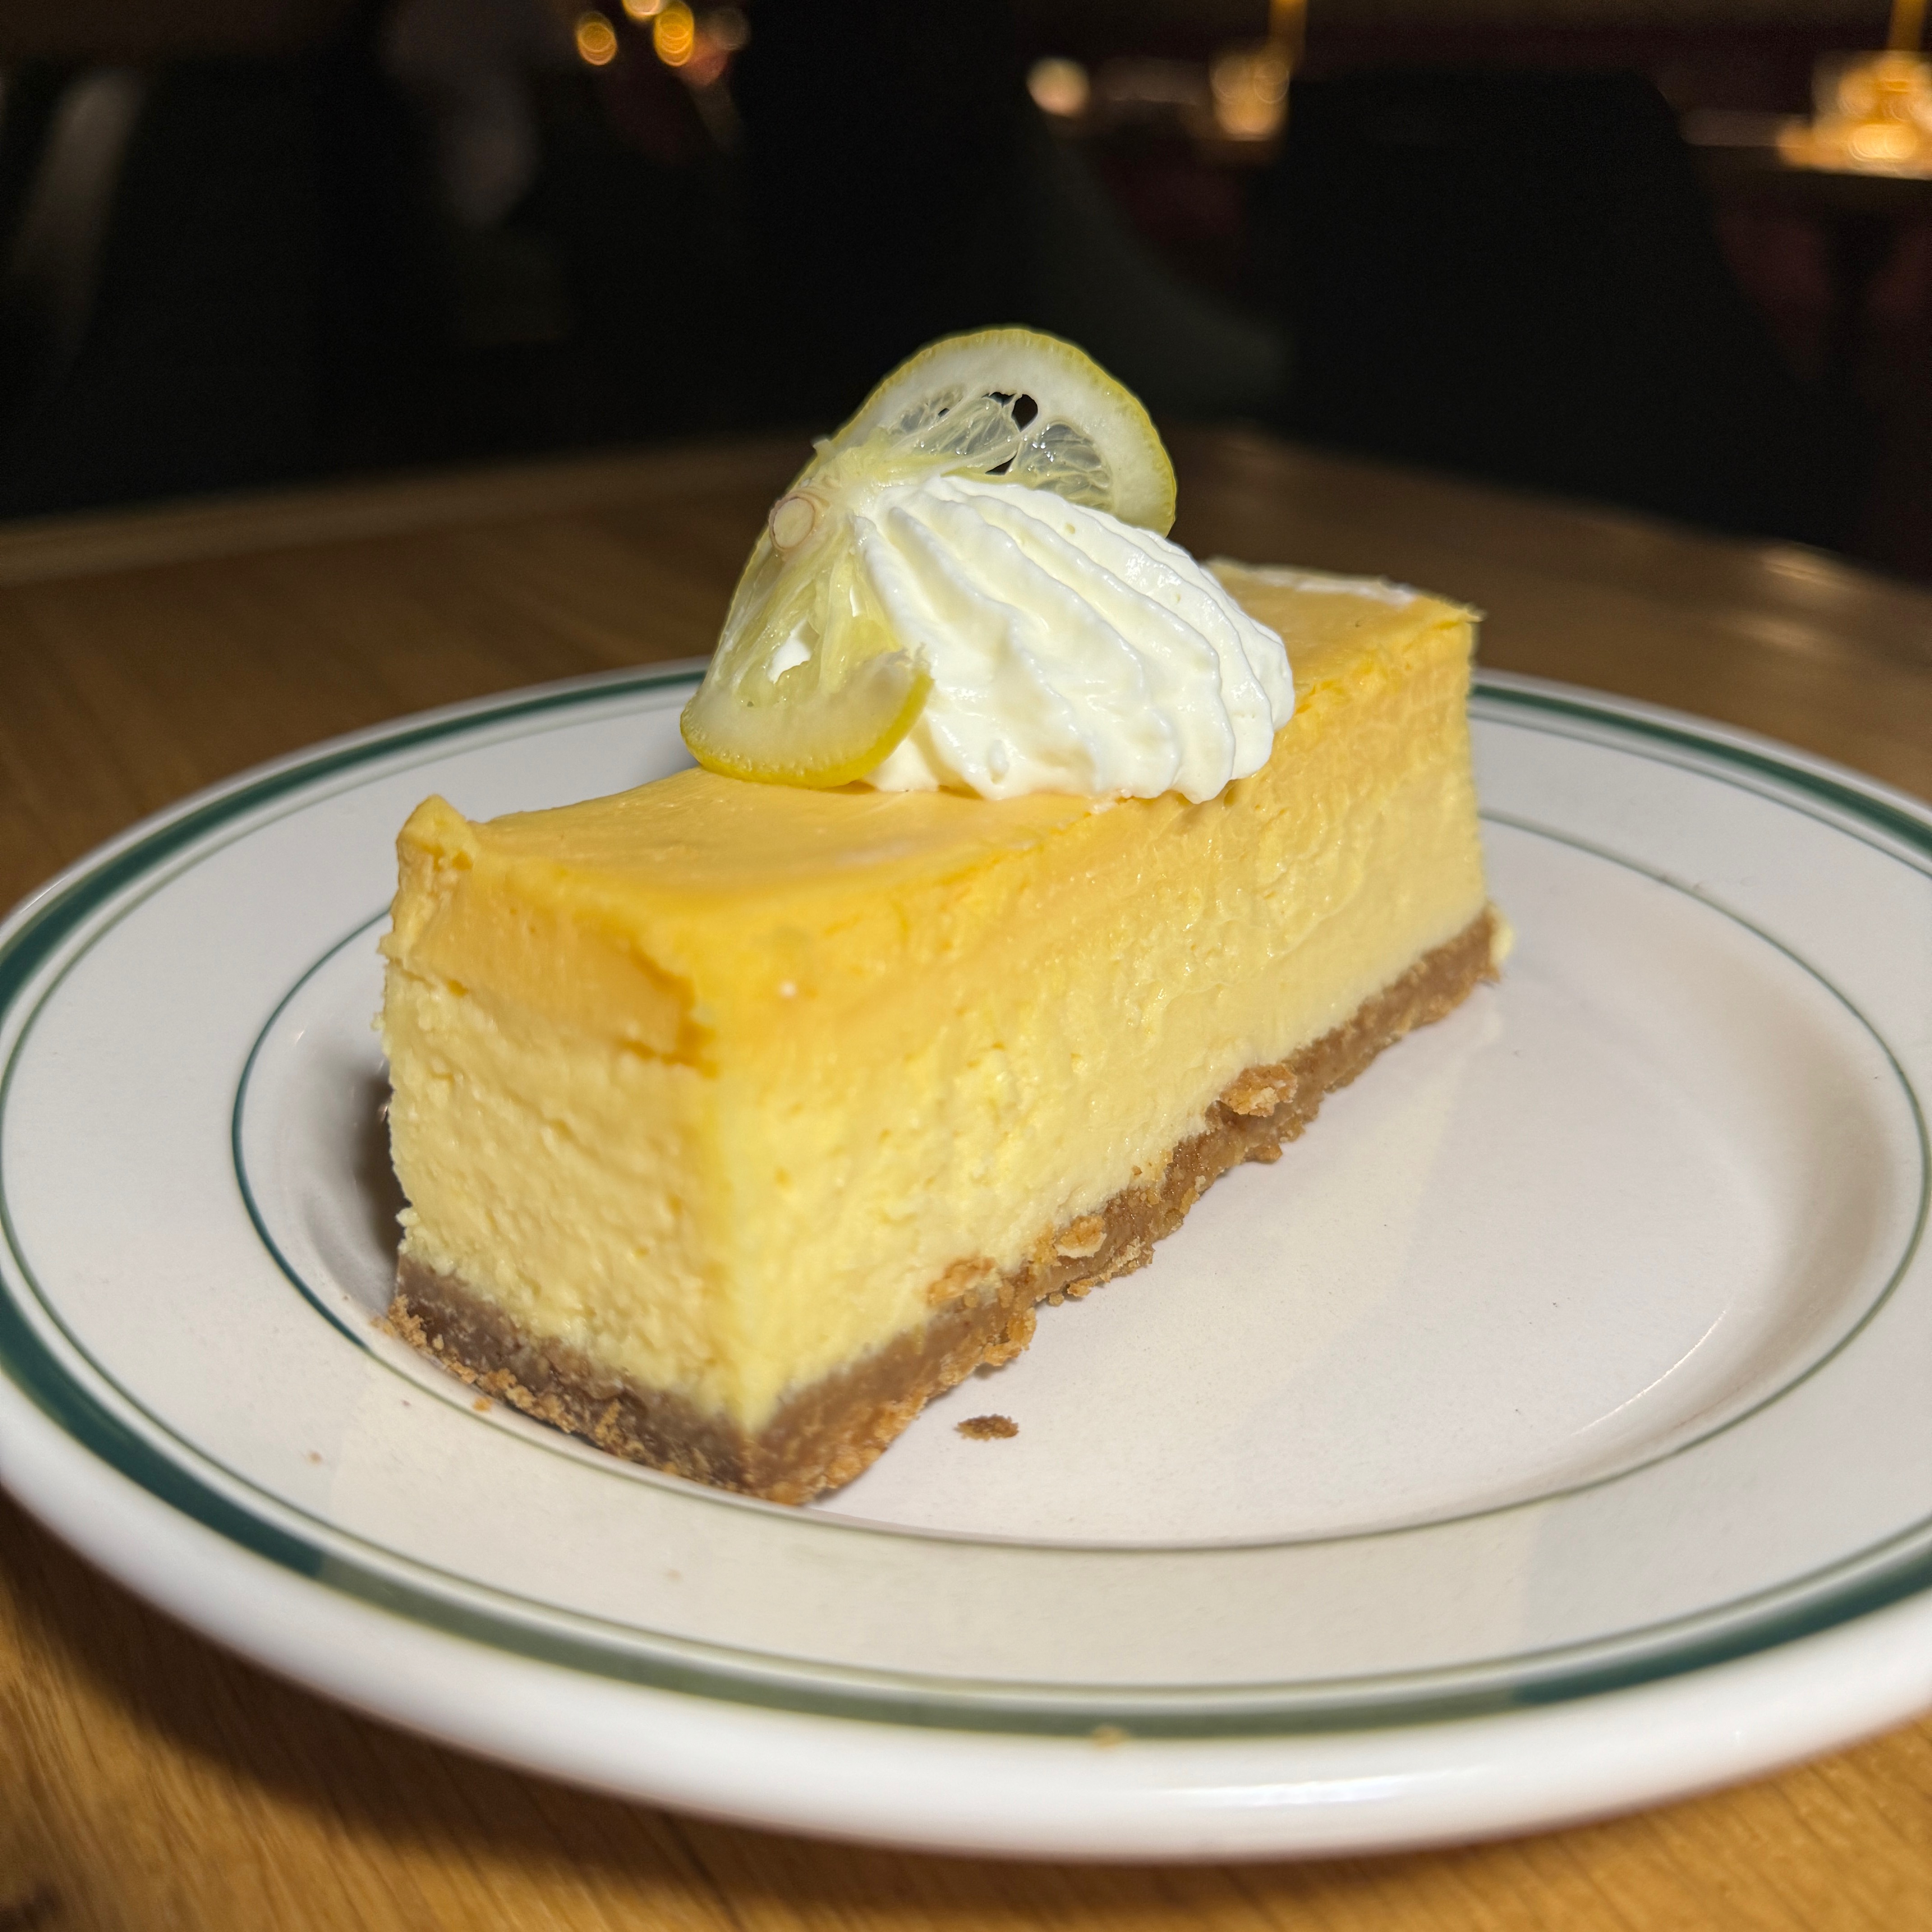 NY Cheesecake With Lemon Custard $12 from Jemma on #foodmento http://foodmento.com/dish/57498